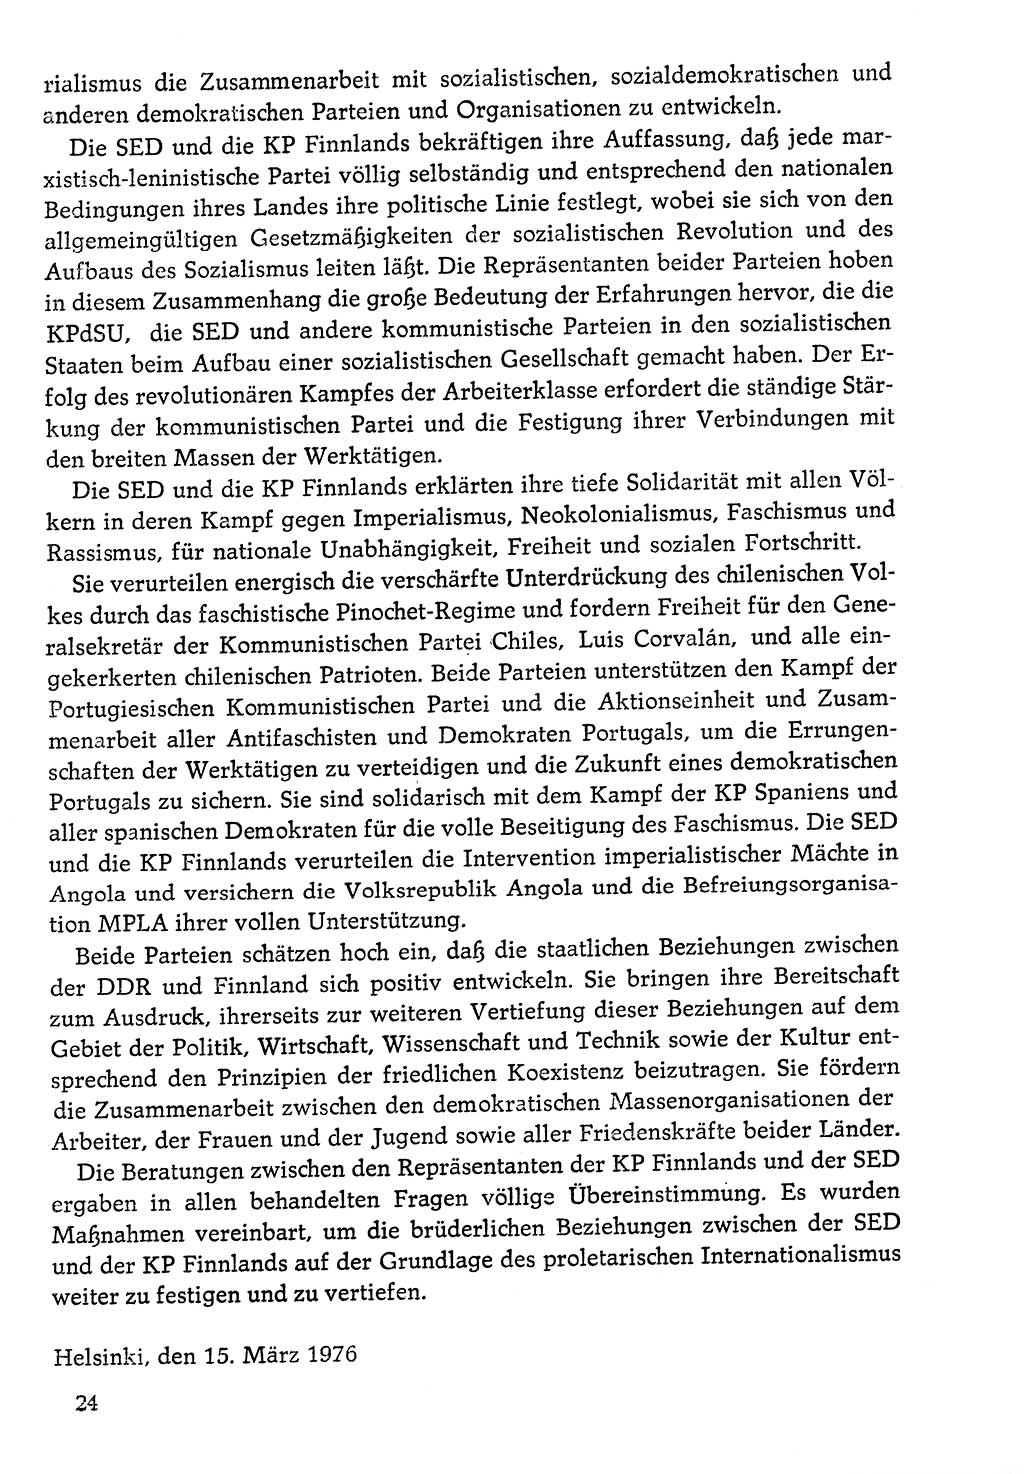 Dokumente der Sozialistischen Einheitspartei Deutschlands (SED) [Deutsche Demokratische Republik (DDR)] 1976-1977, Seite 24 (Dok. SED DDR 1976-1977, S. 24)